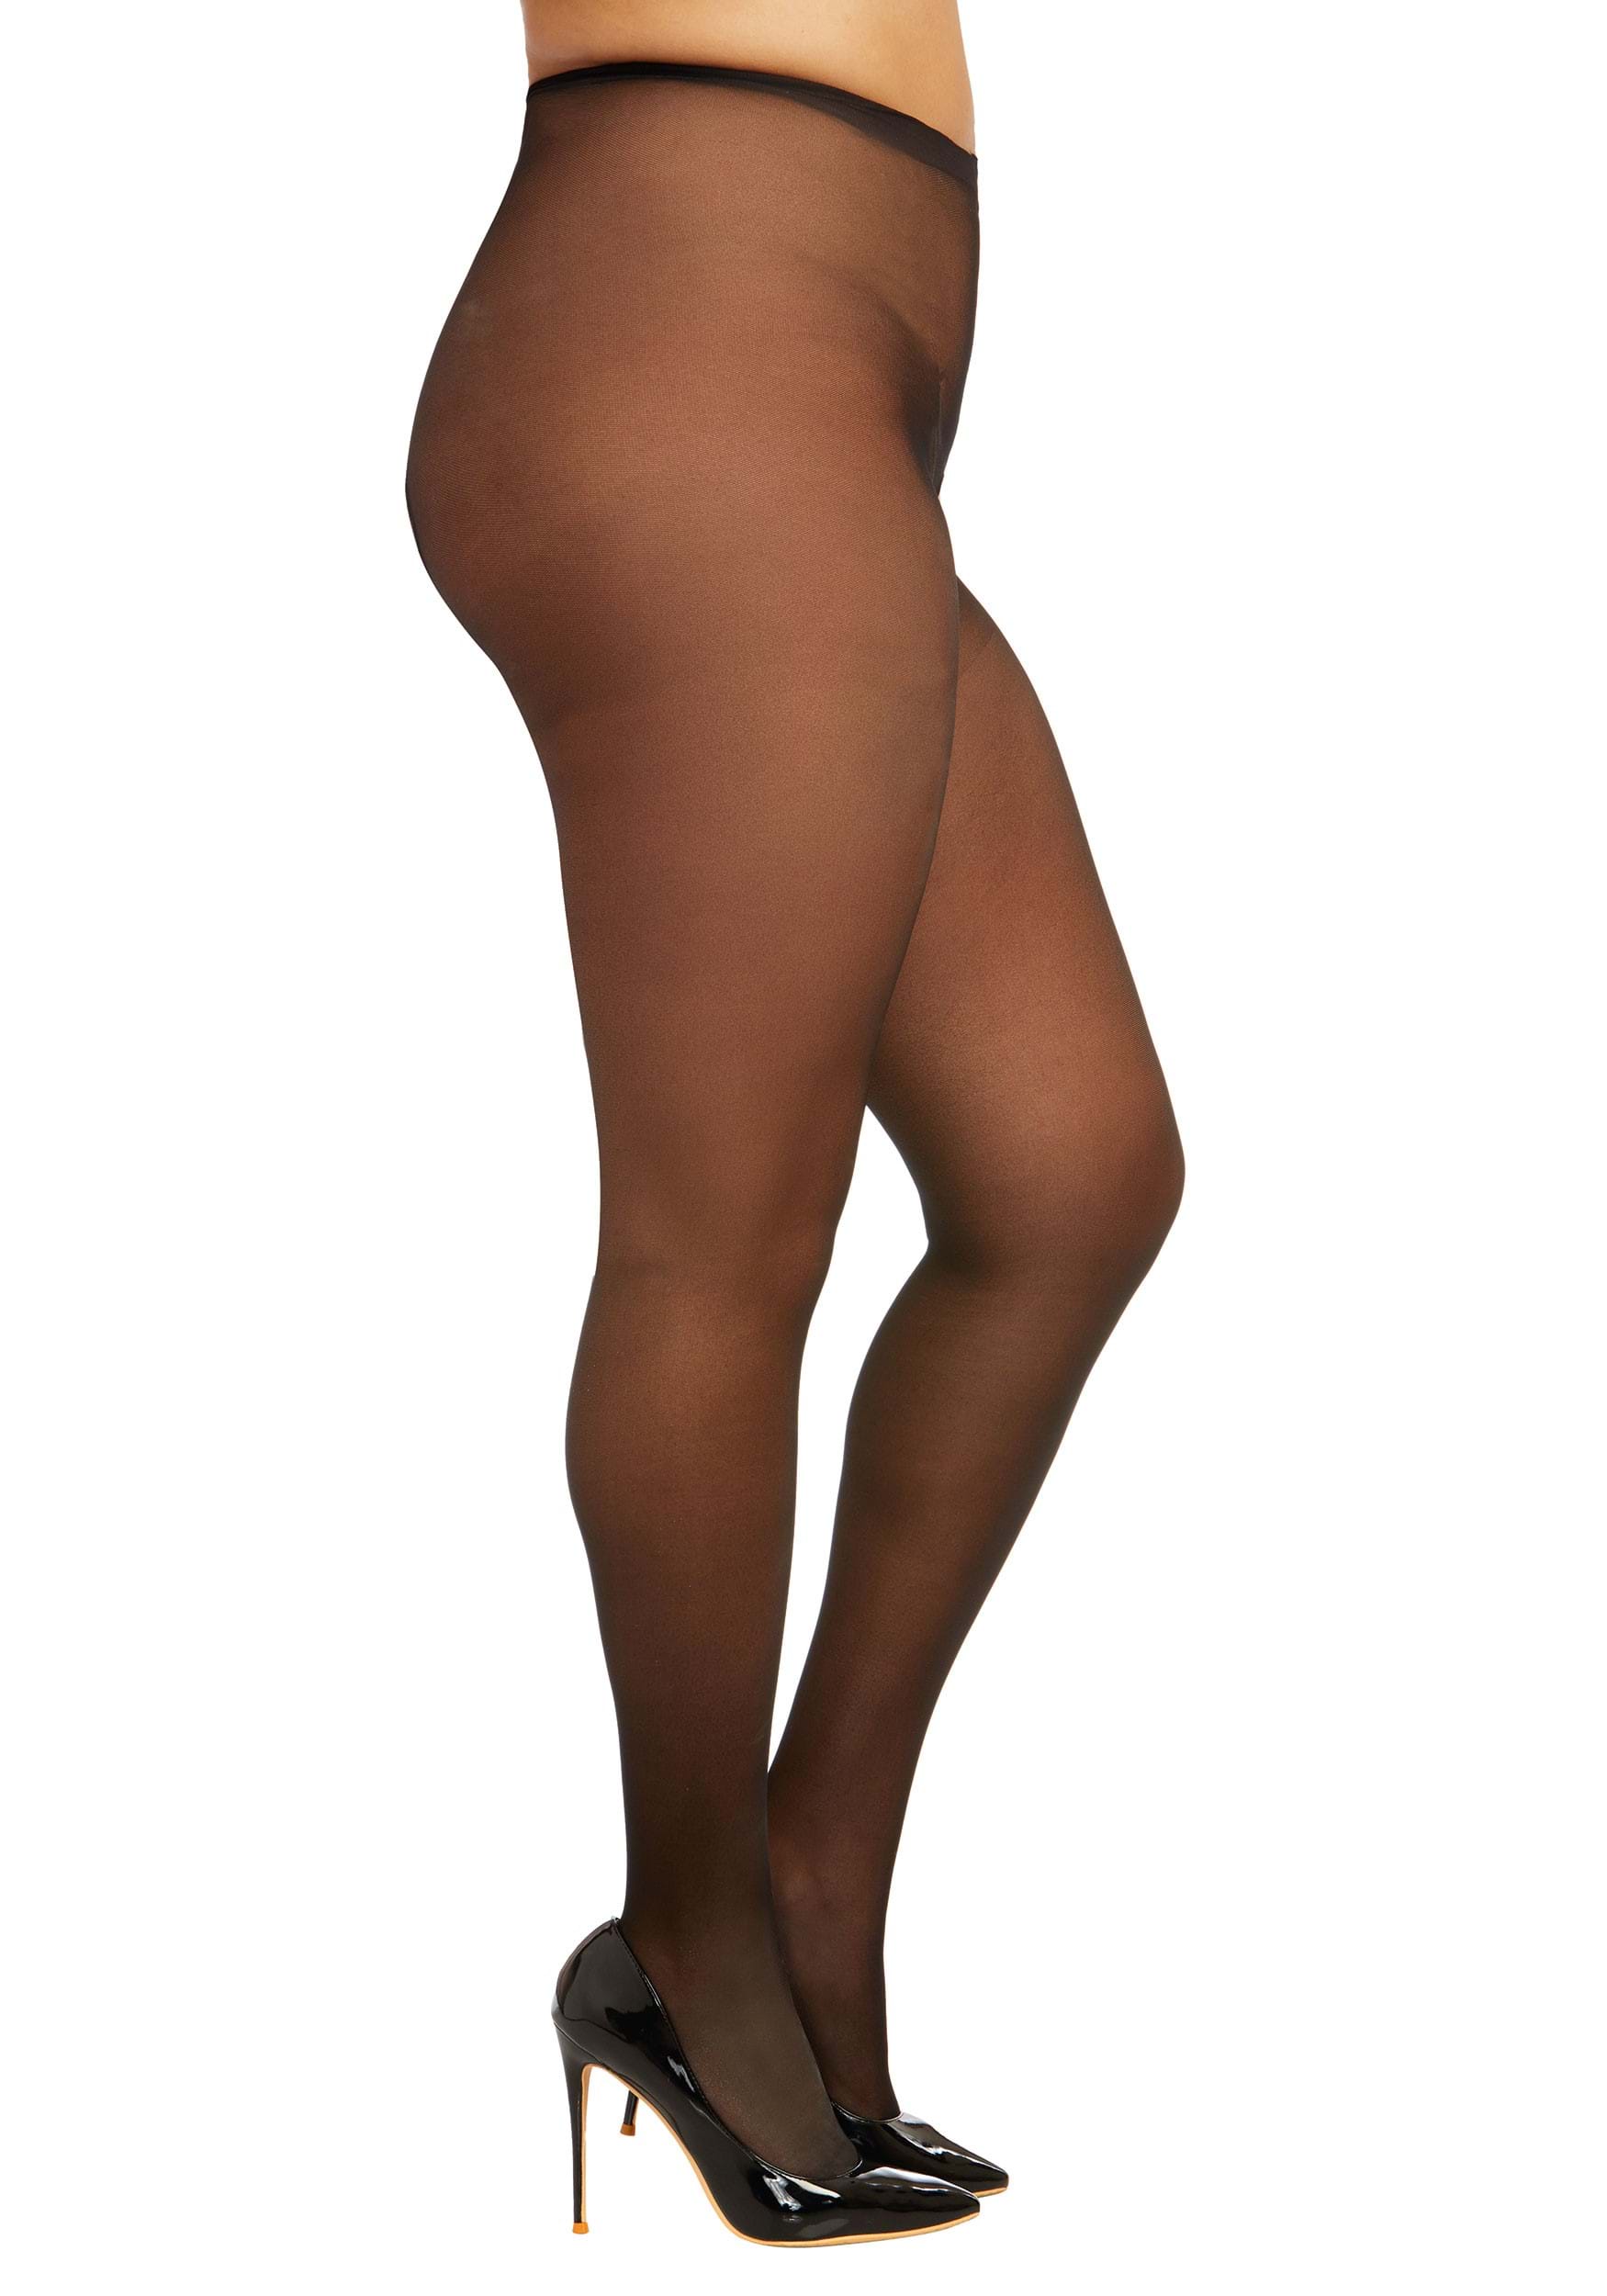 Pantyhose Women Plush Leggings Translucent Long Tube Skin